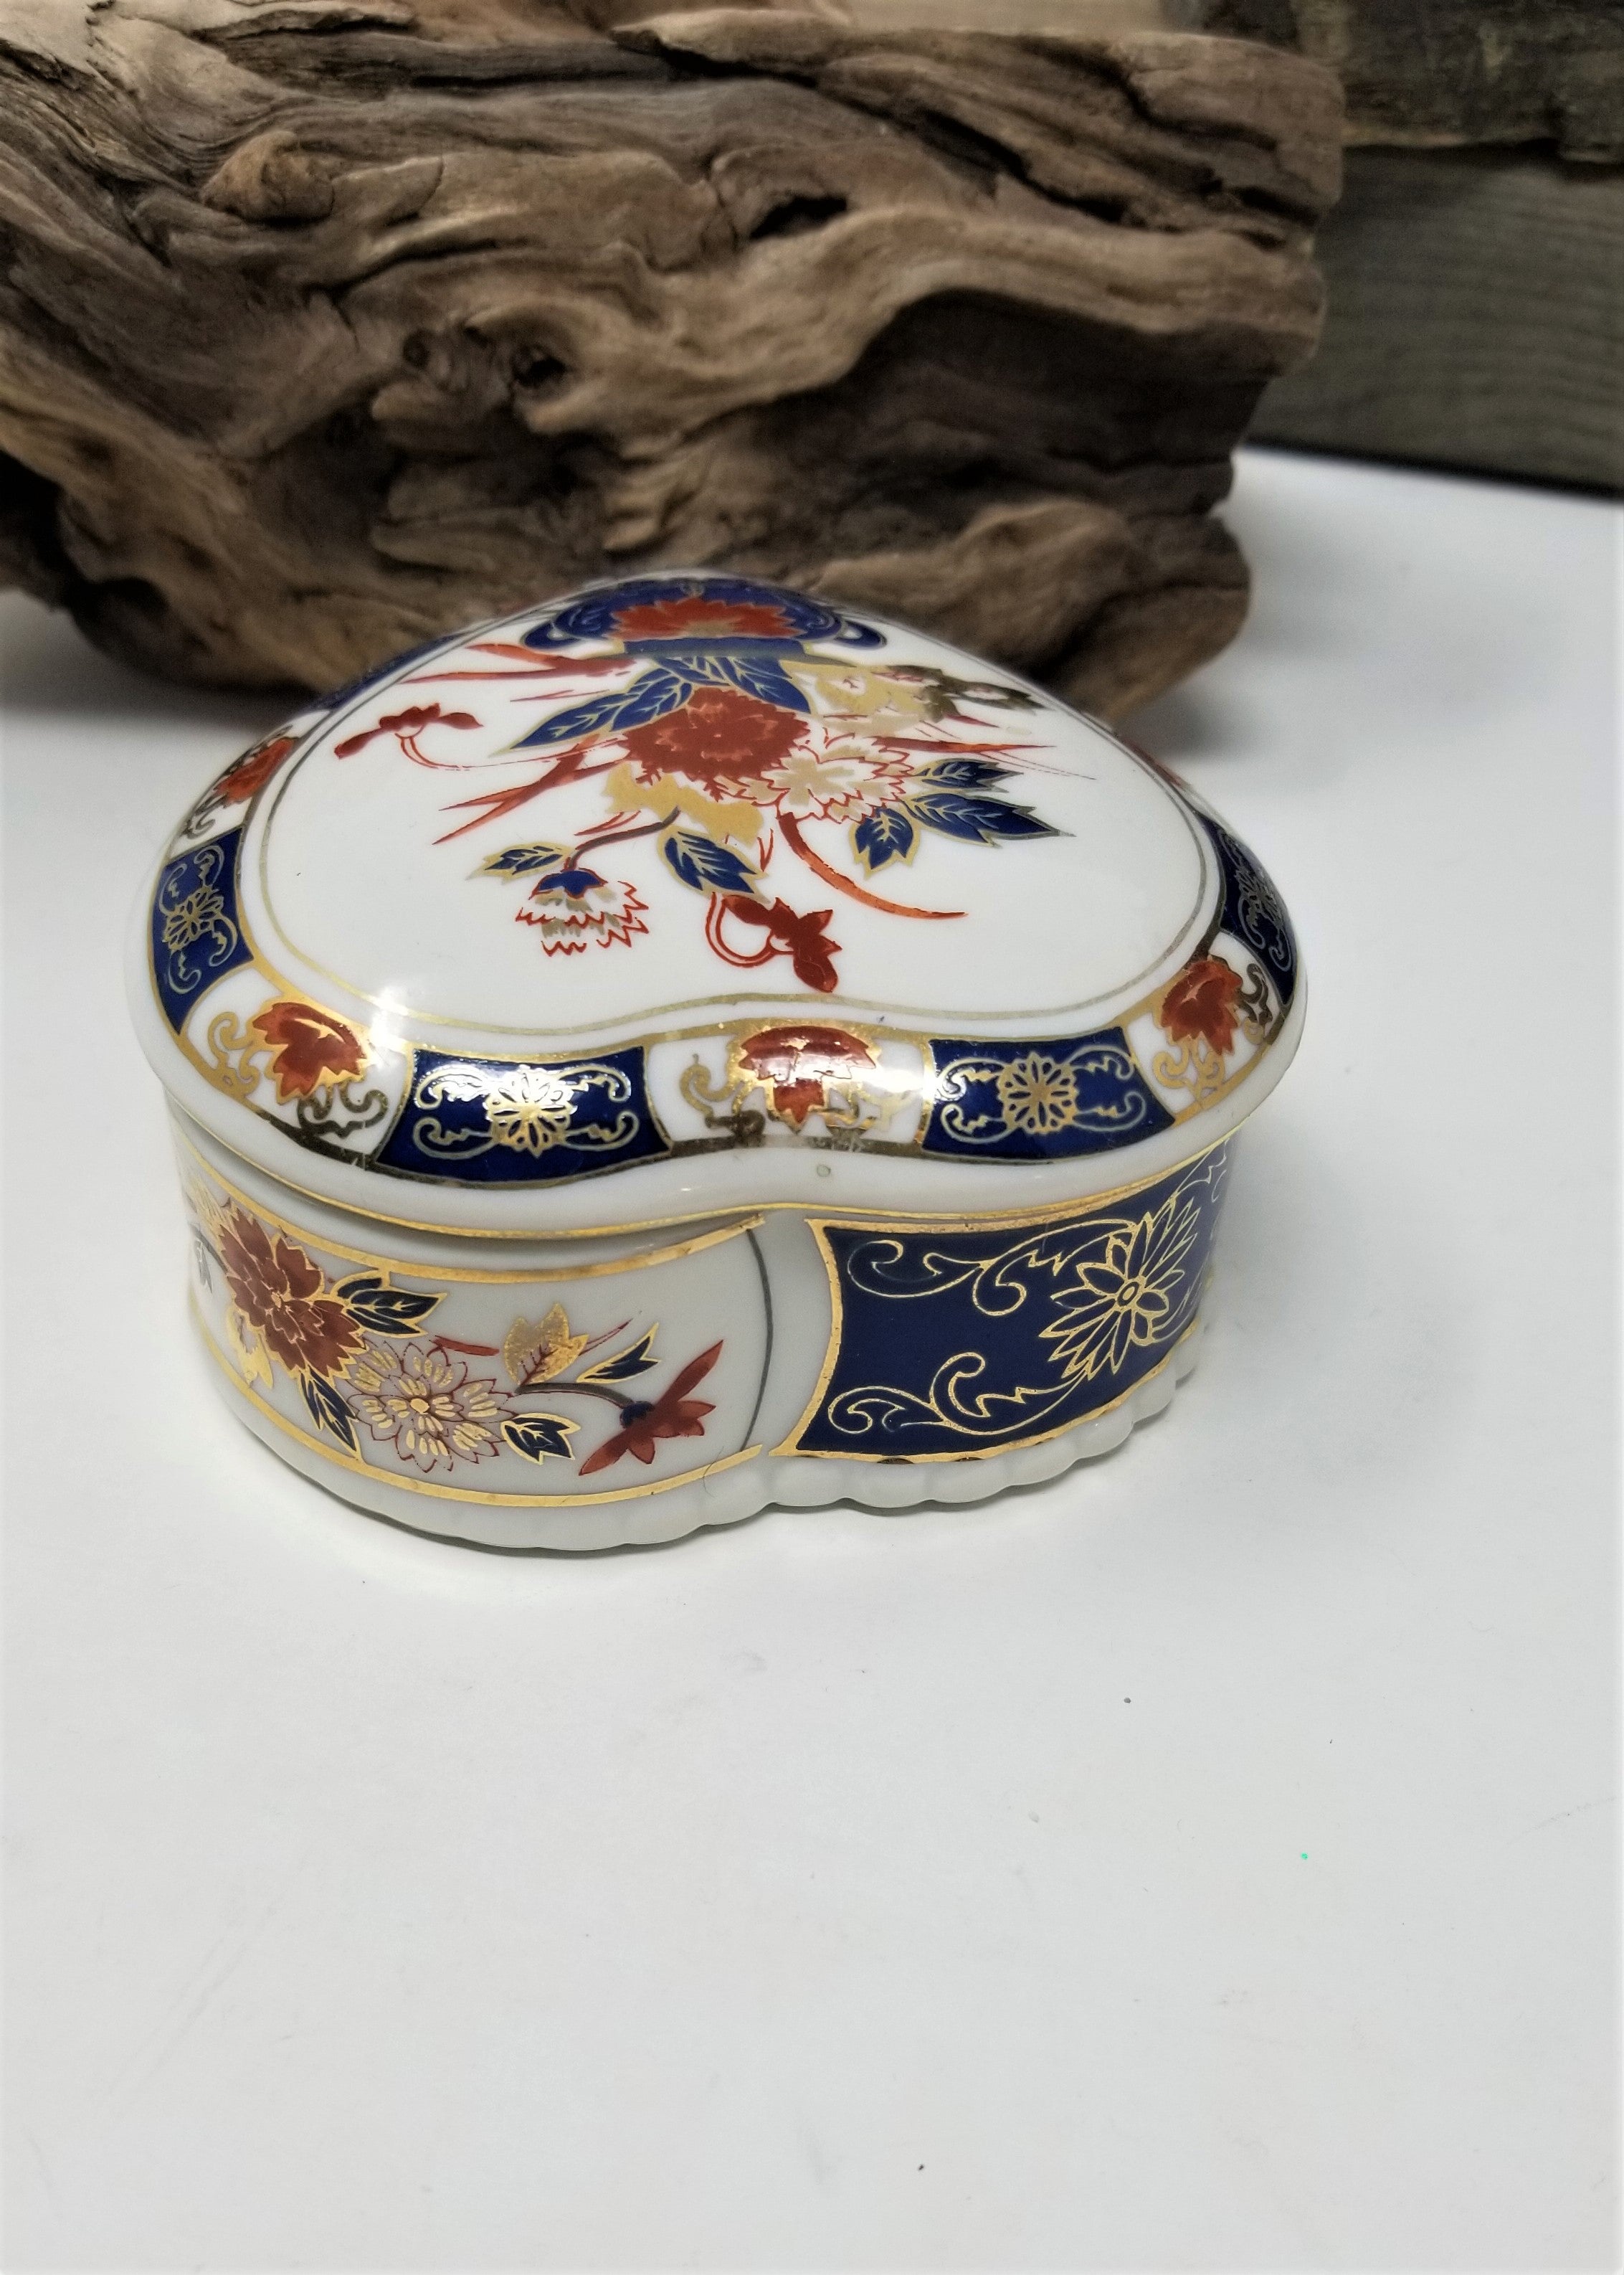 Porcelain Vintage Trinket Box Floral Made in Japan